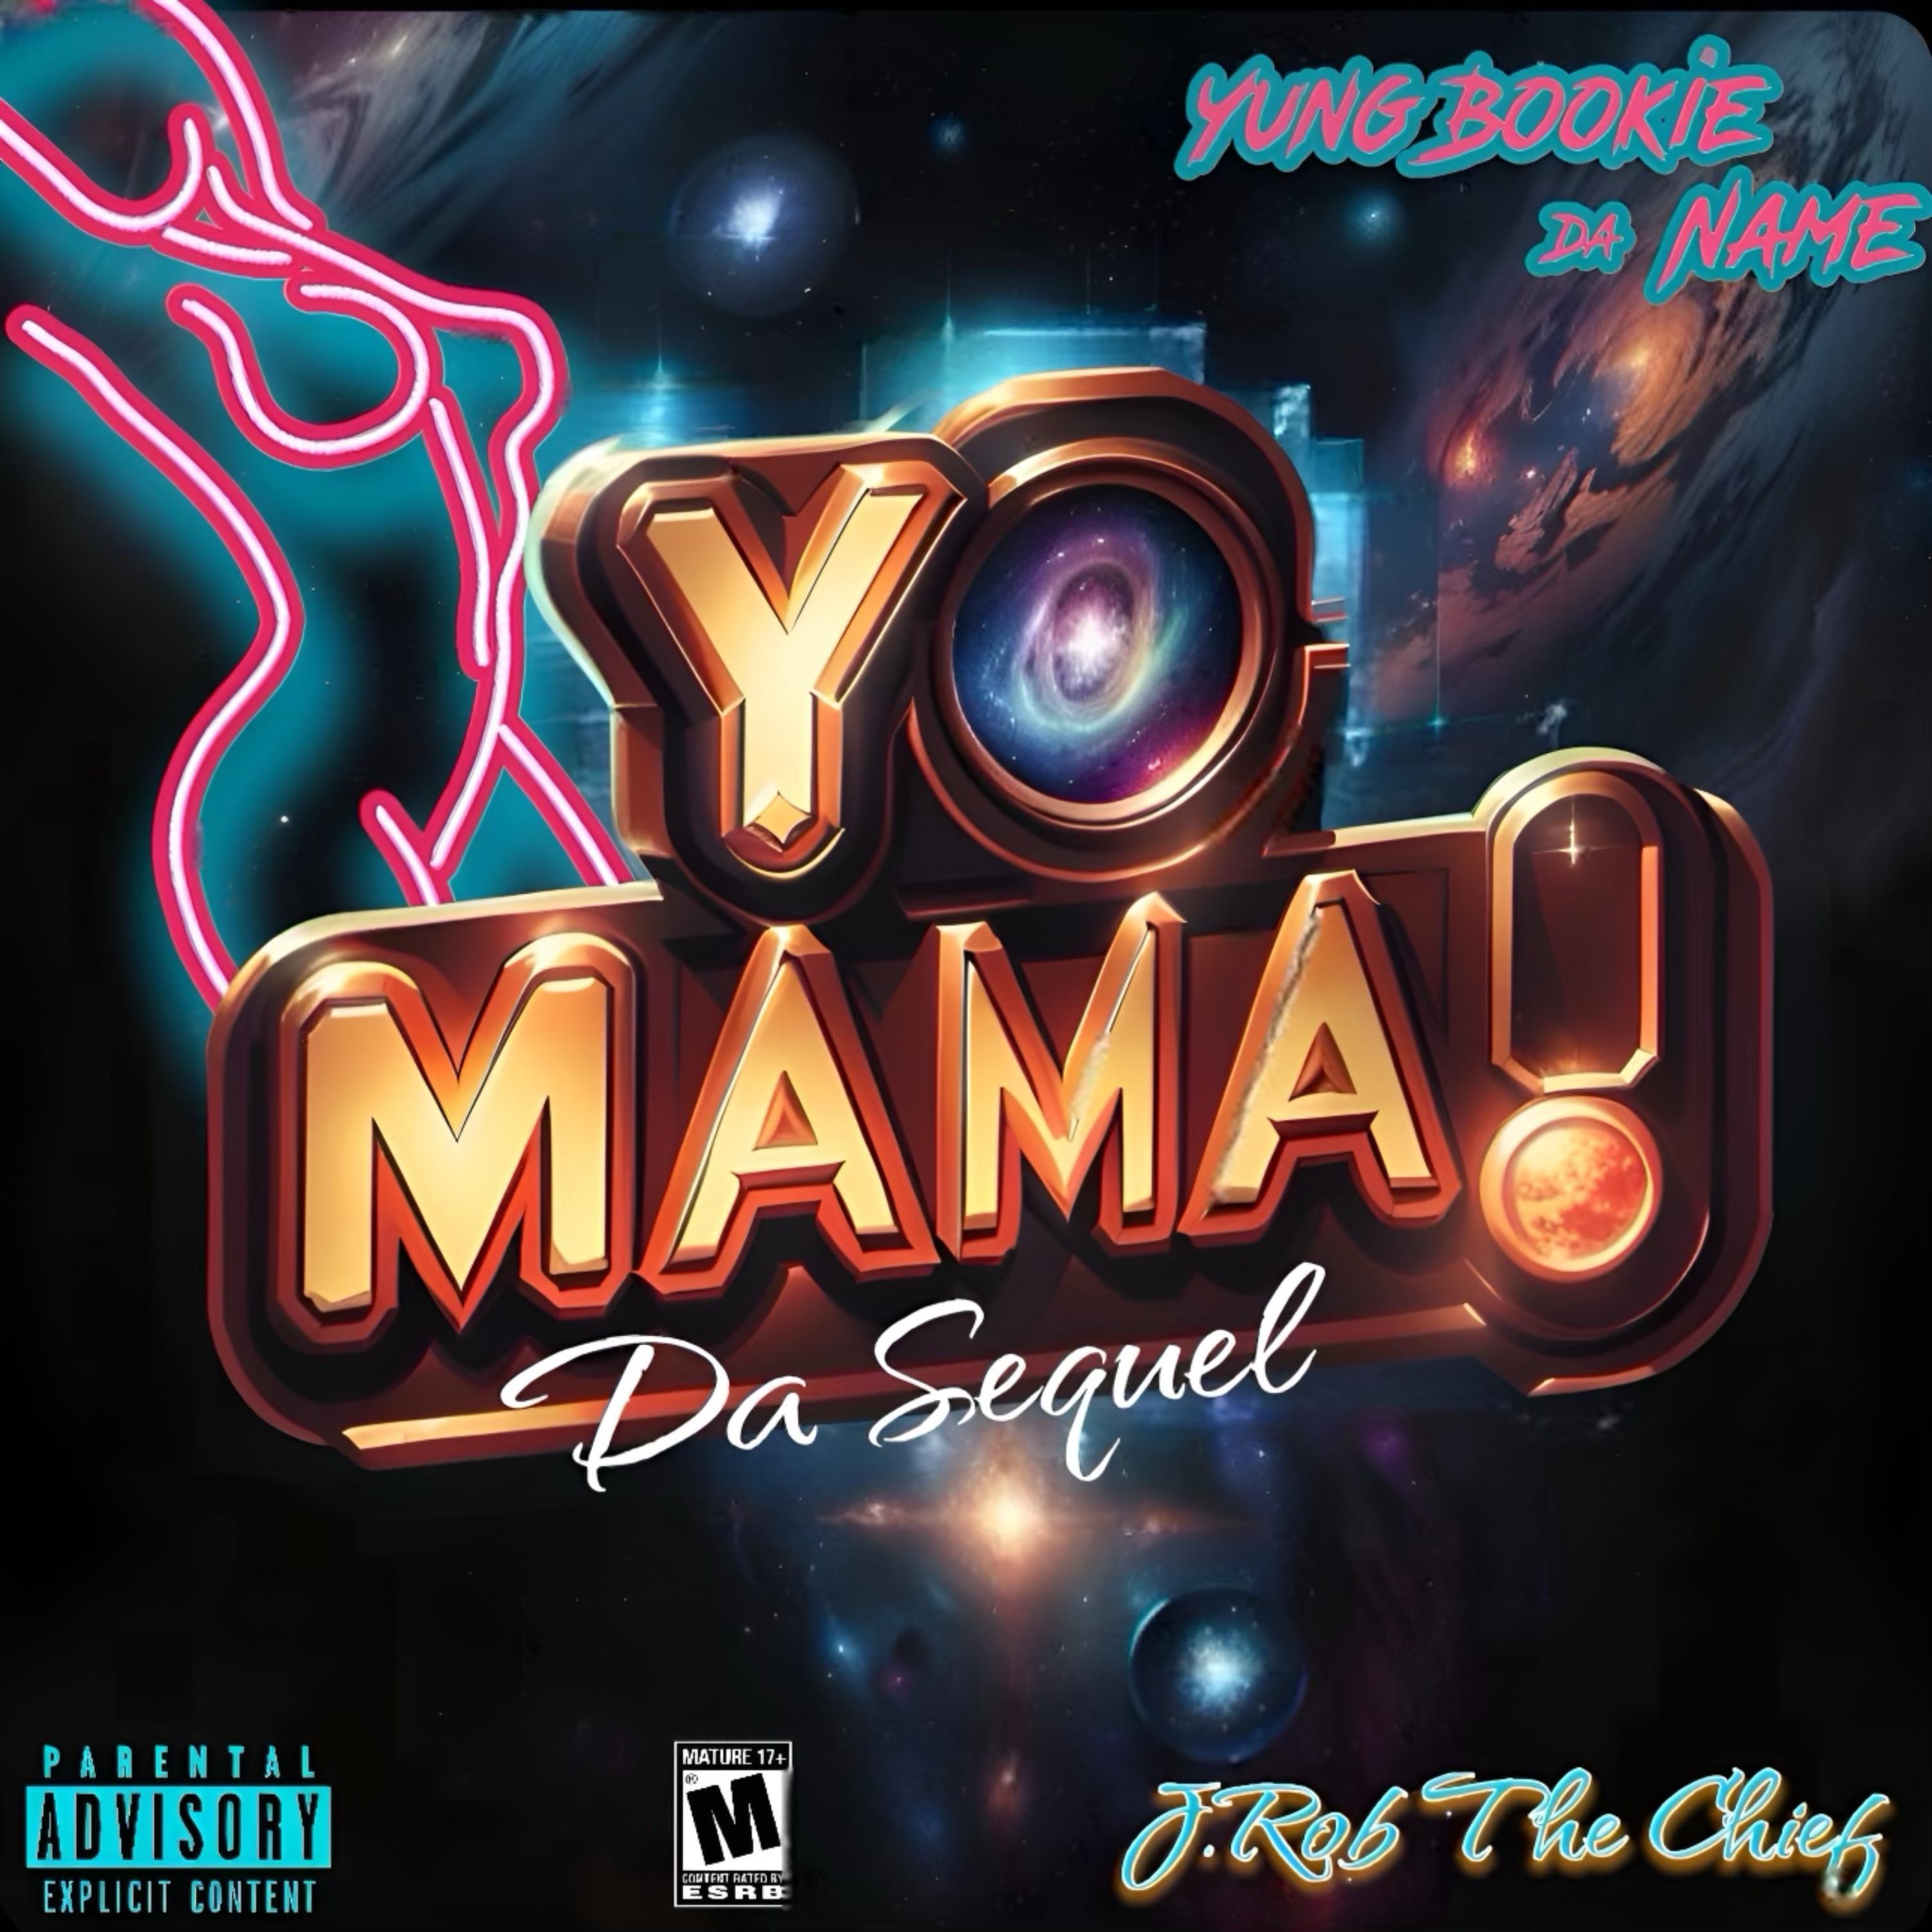 Yung Bookie da Name - Yo Mama! (Da Sequel)